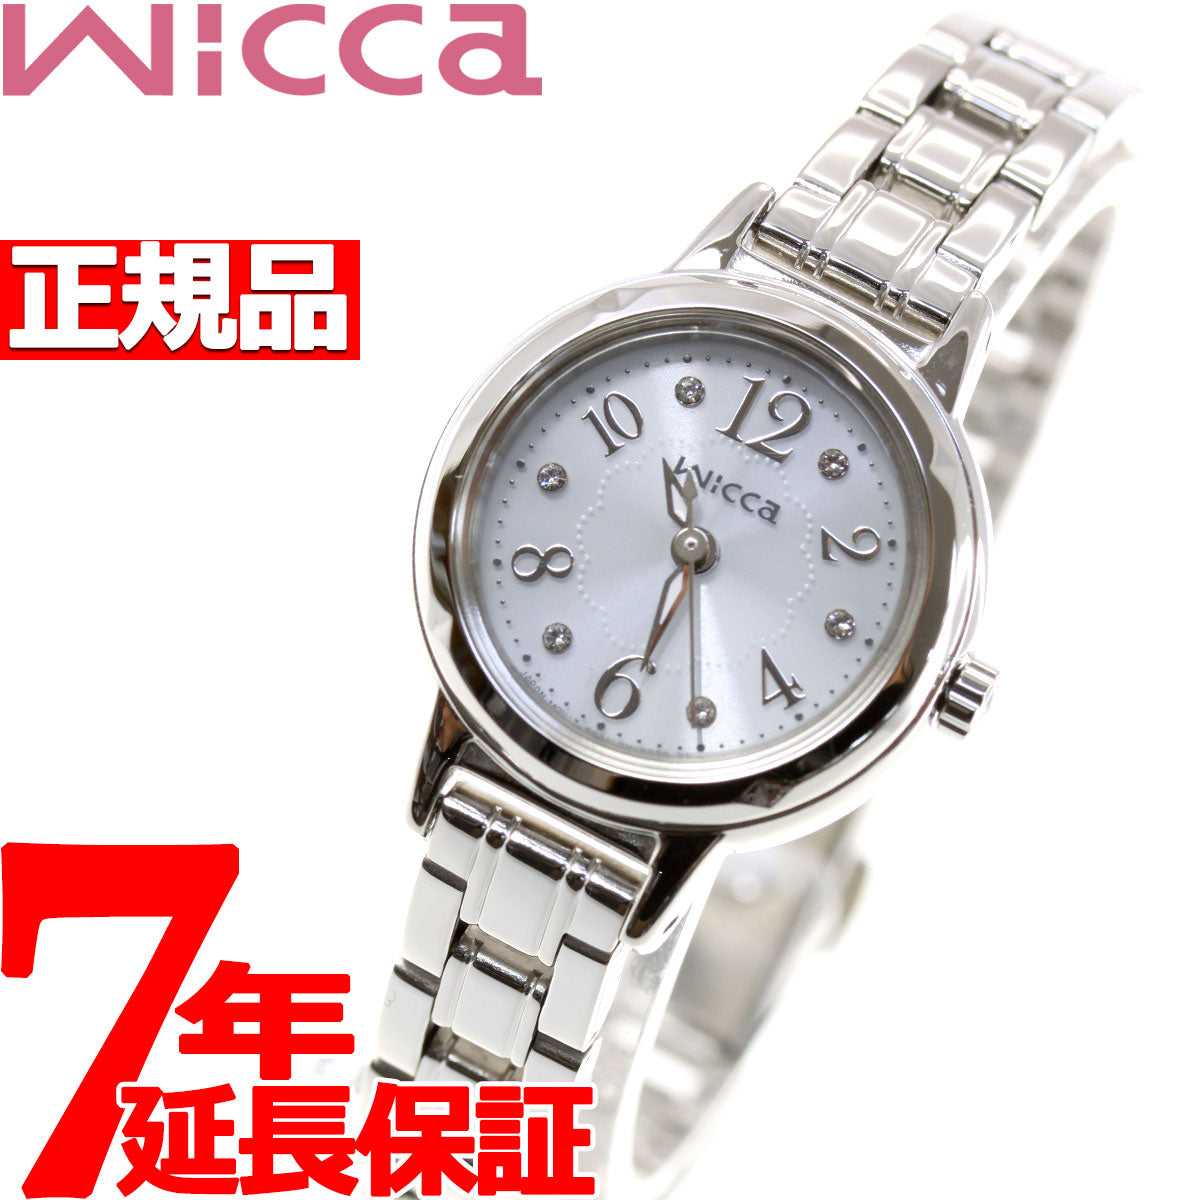 シチズン ウィッカ CITIZEN wicca ソーラー エコドライブ 腕時計 レディース クリスタルモデル KH9-914-15